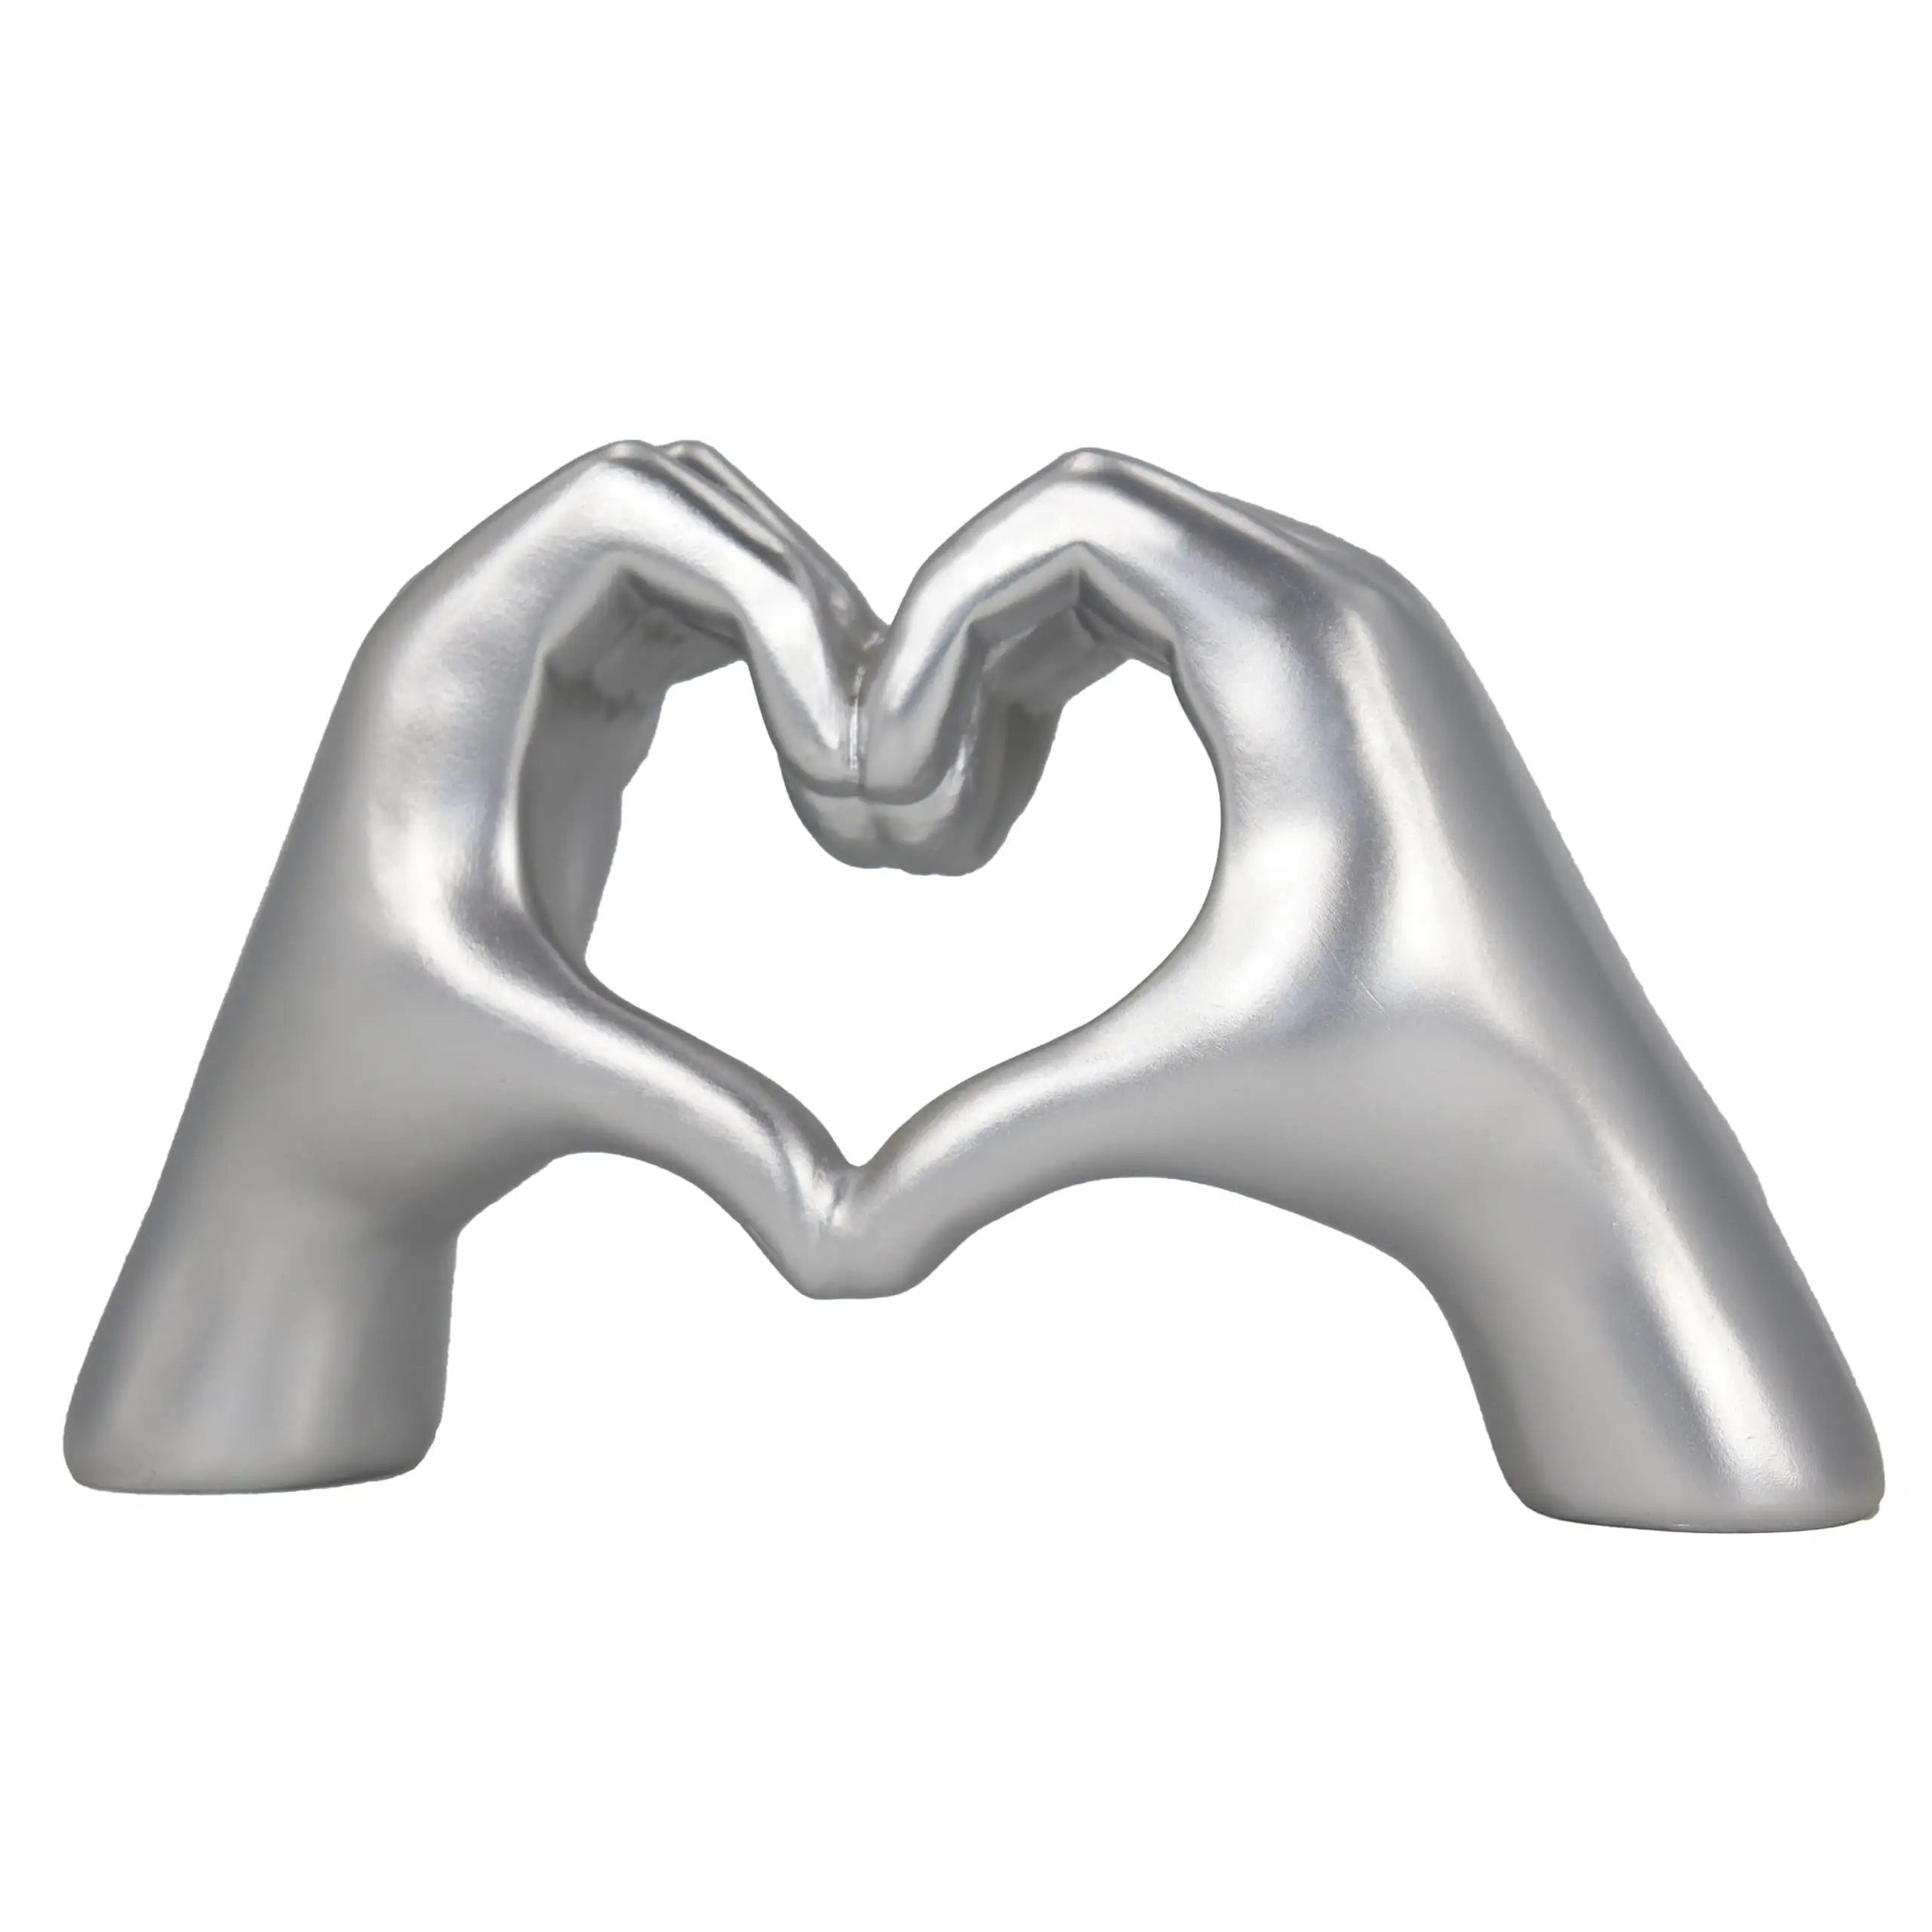 Moderno personalizado plata corazón gesto resina artesanía romántica amor escultura paz signo estatua mujeres artístico hogar figurita regalos